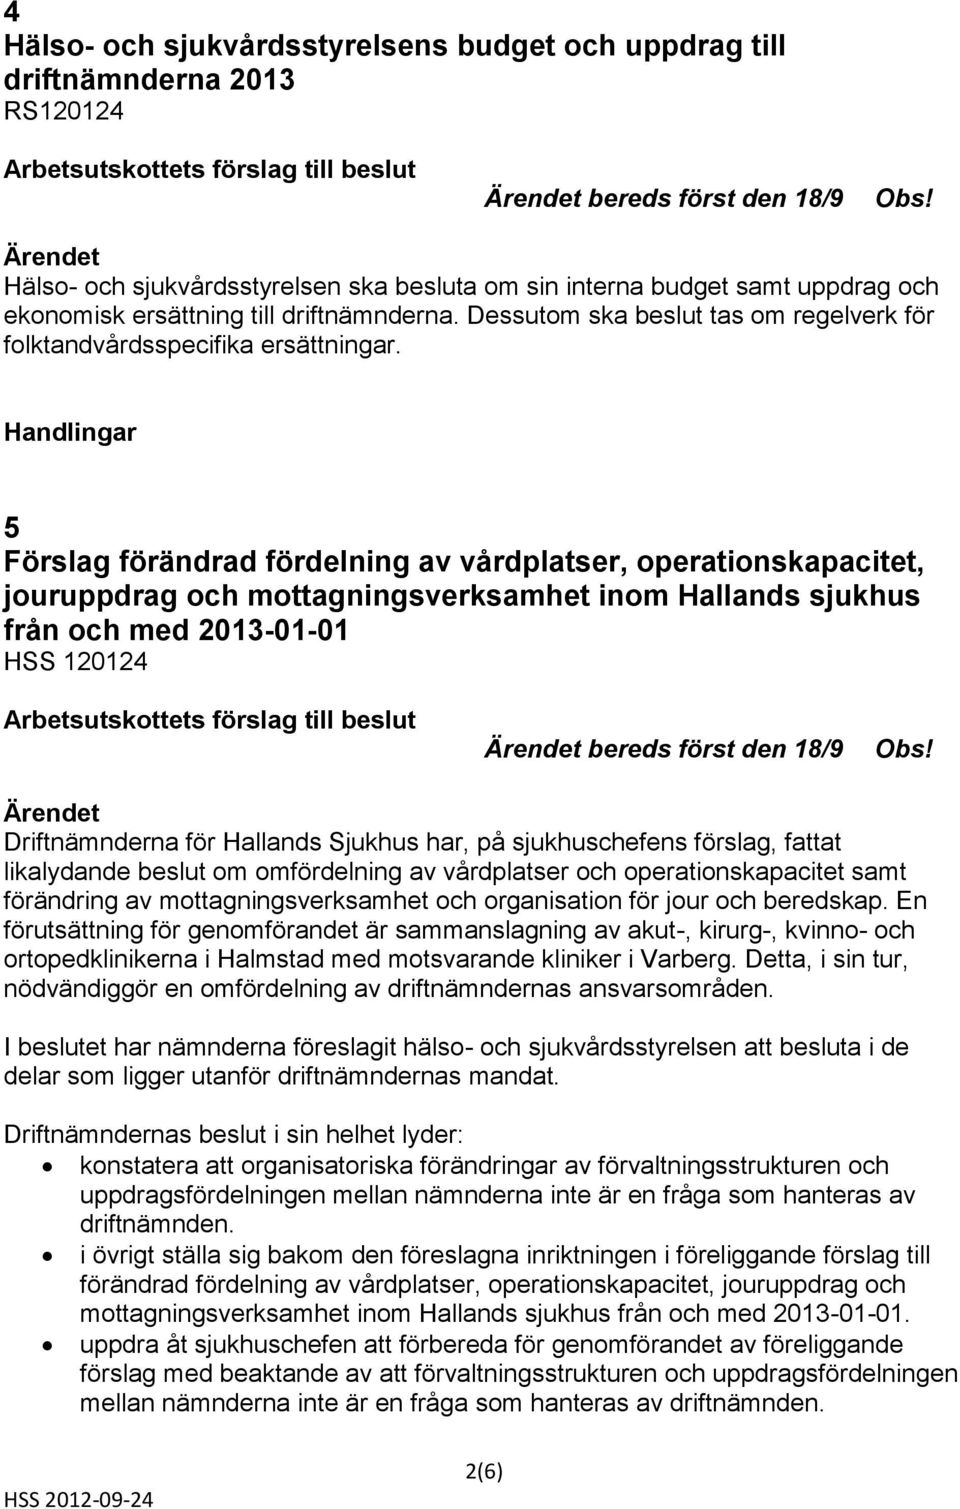 5 Förslag förändrad fördelning av vårdplatser, operationskapacitet, jouruppdrag och mottagningsverksamhet inom Hallands sjukhus från och med 2013-01-01 HSS 120124 bereds först den 18/9 Obs!